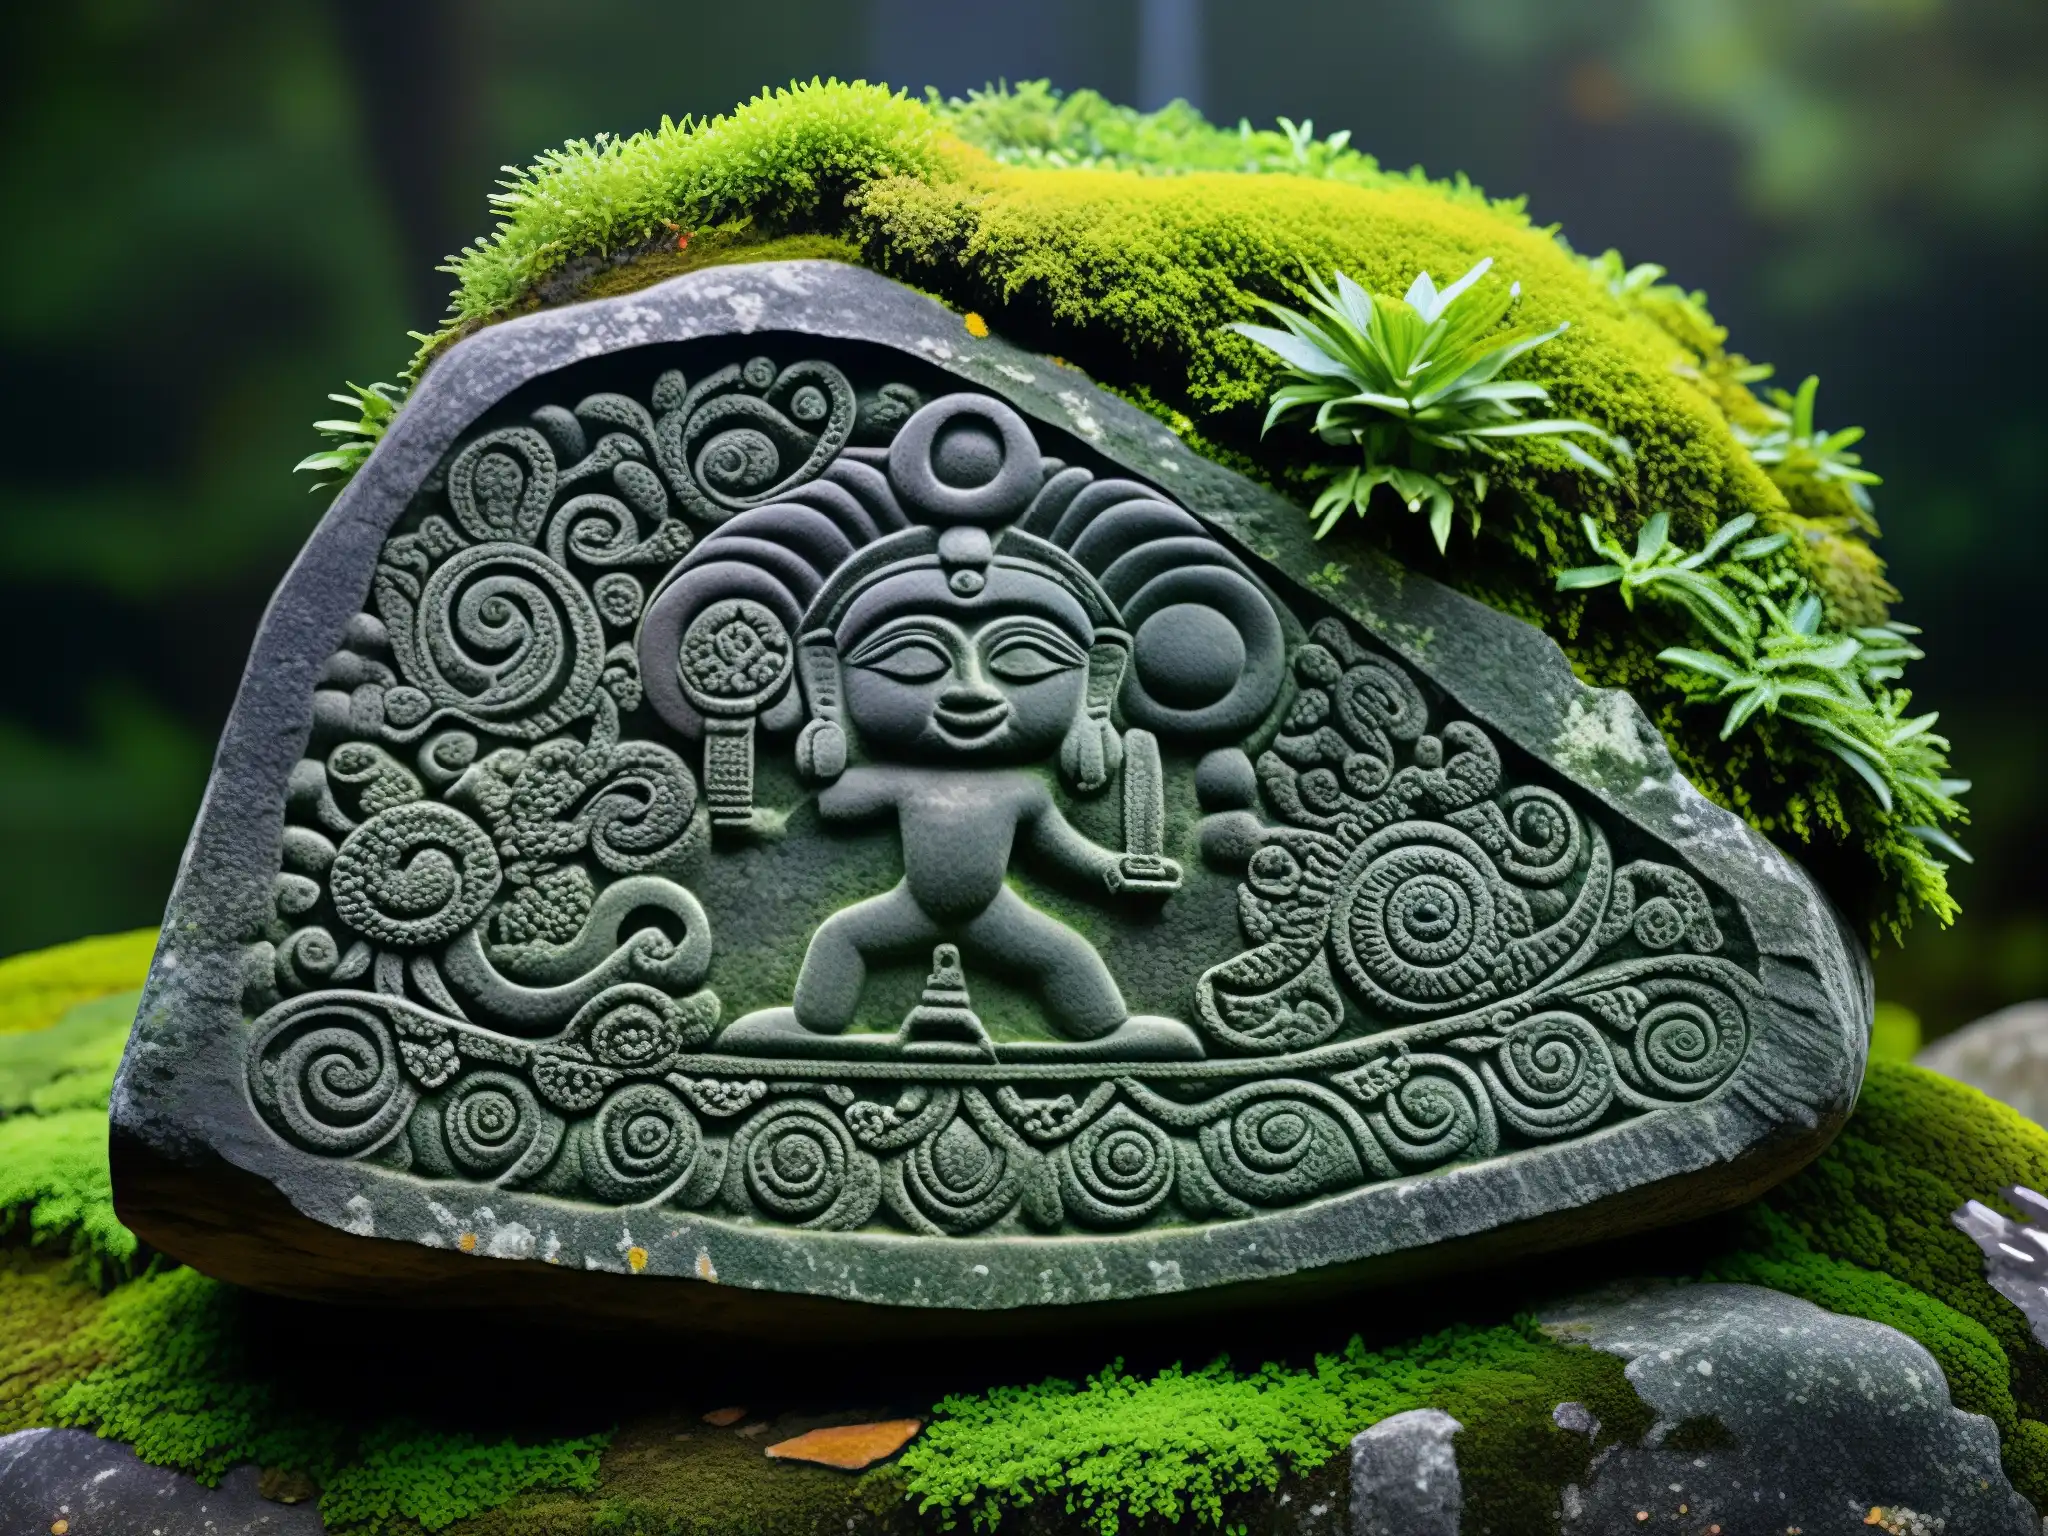 Detalle impresionante de la Piedra Encantada de Tlalpan, enigma prehispánico en la naturaleza exuberante